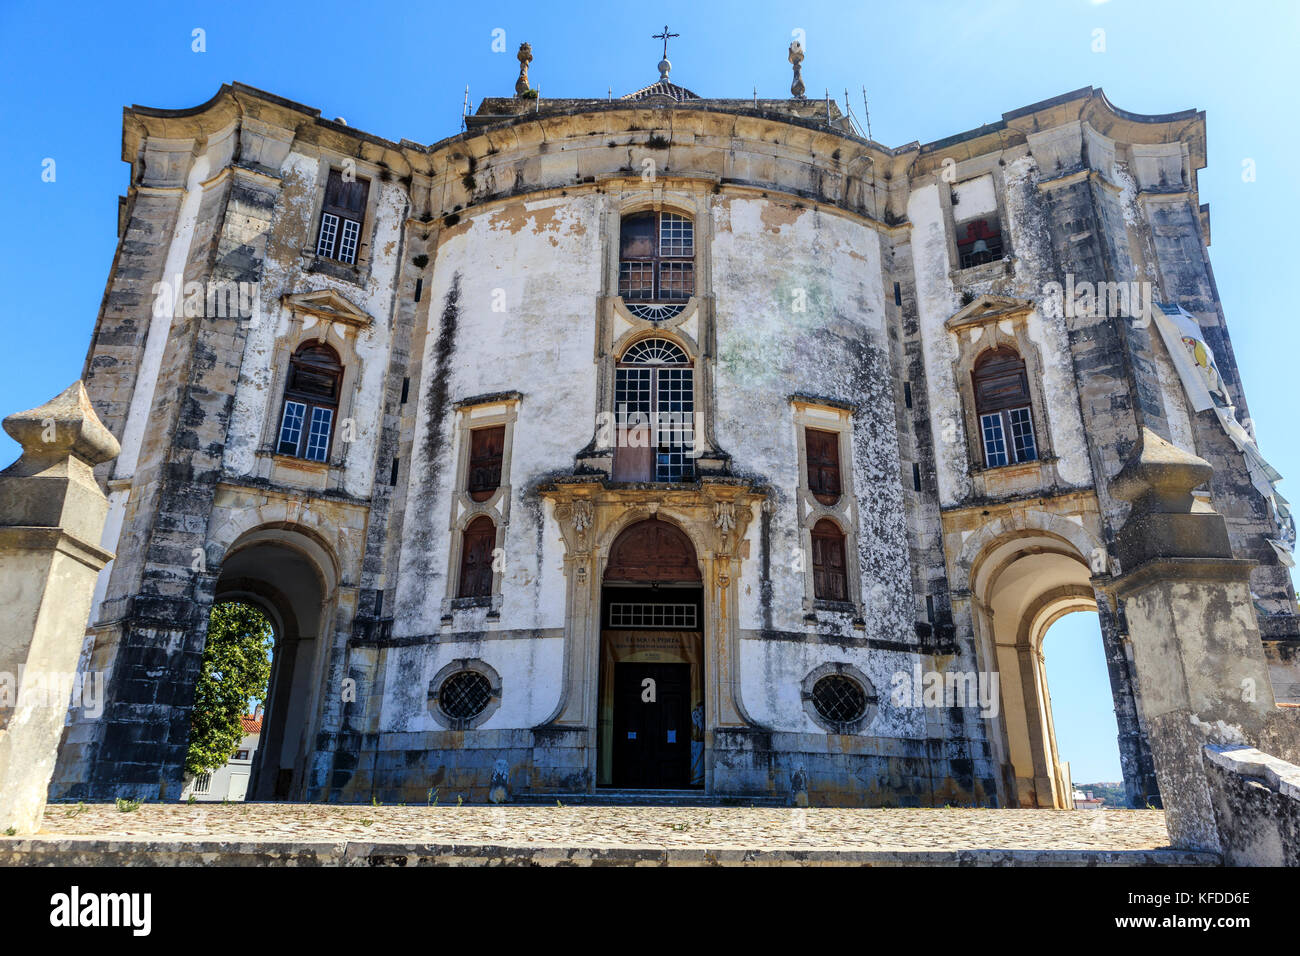 Angolo basso, alto contrasto Vista della facciata del Santuario do Senhor Gesù da Pedra nella parrocchia di Santa Maria nei pressi di Obidos, Portogallo. Foto Stock